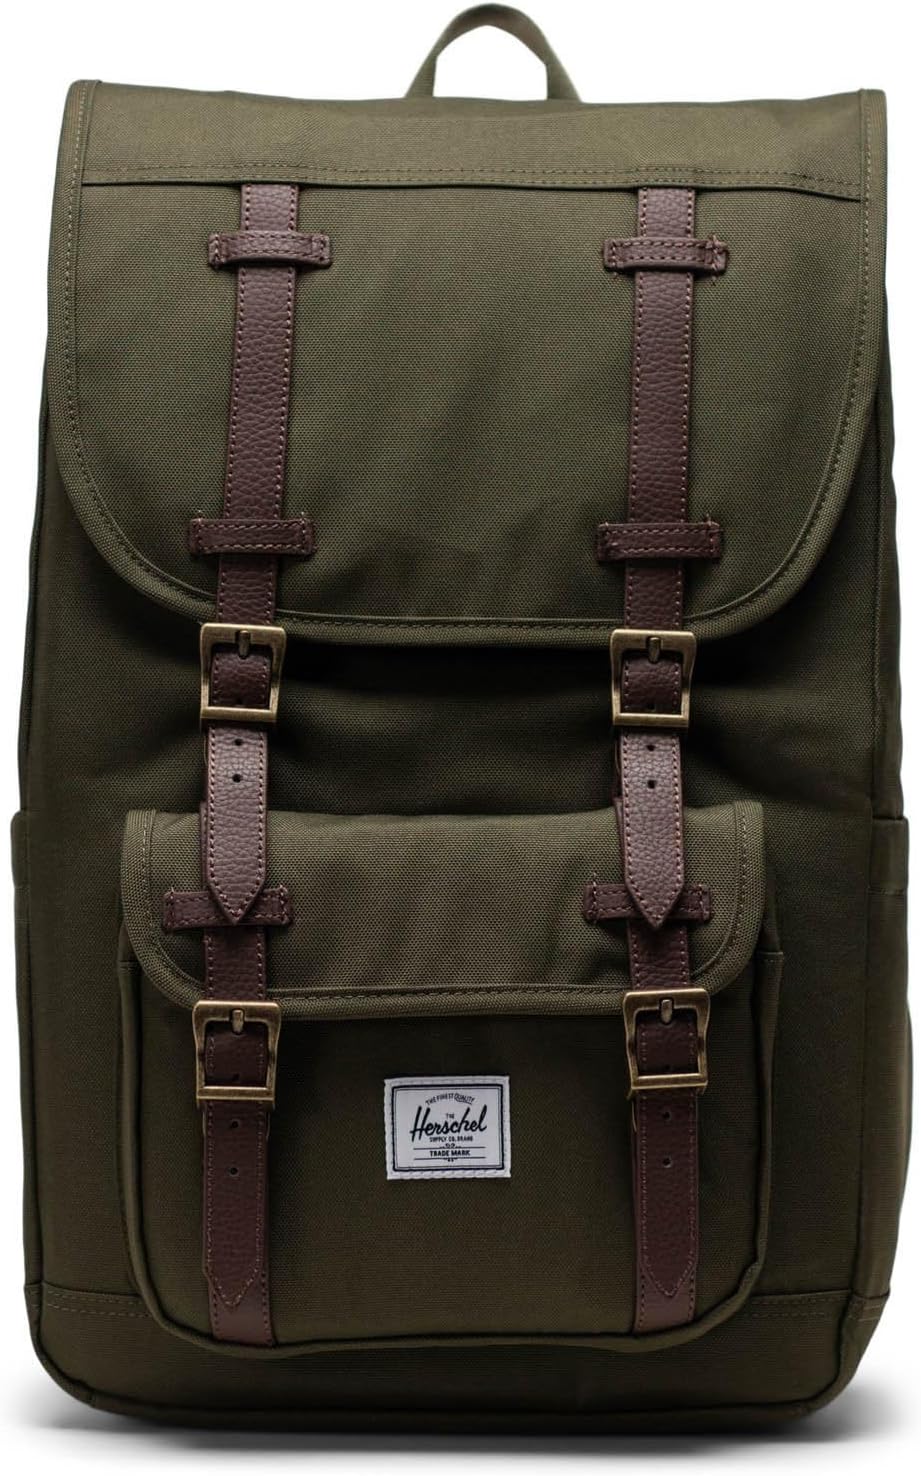 рюкзак classic x large herschel supply co цвет ivy green Рюкзак Little America Mid Backpack Herschel Supply Co., цвет Ivy Green